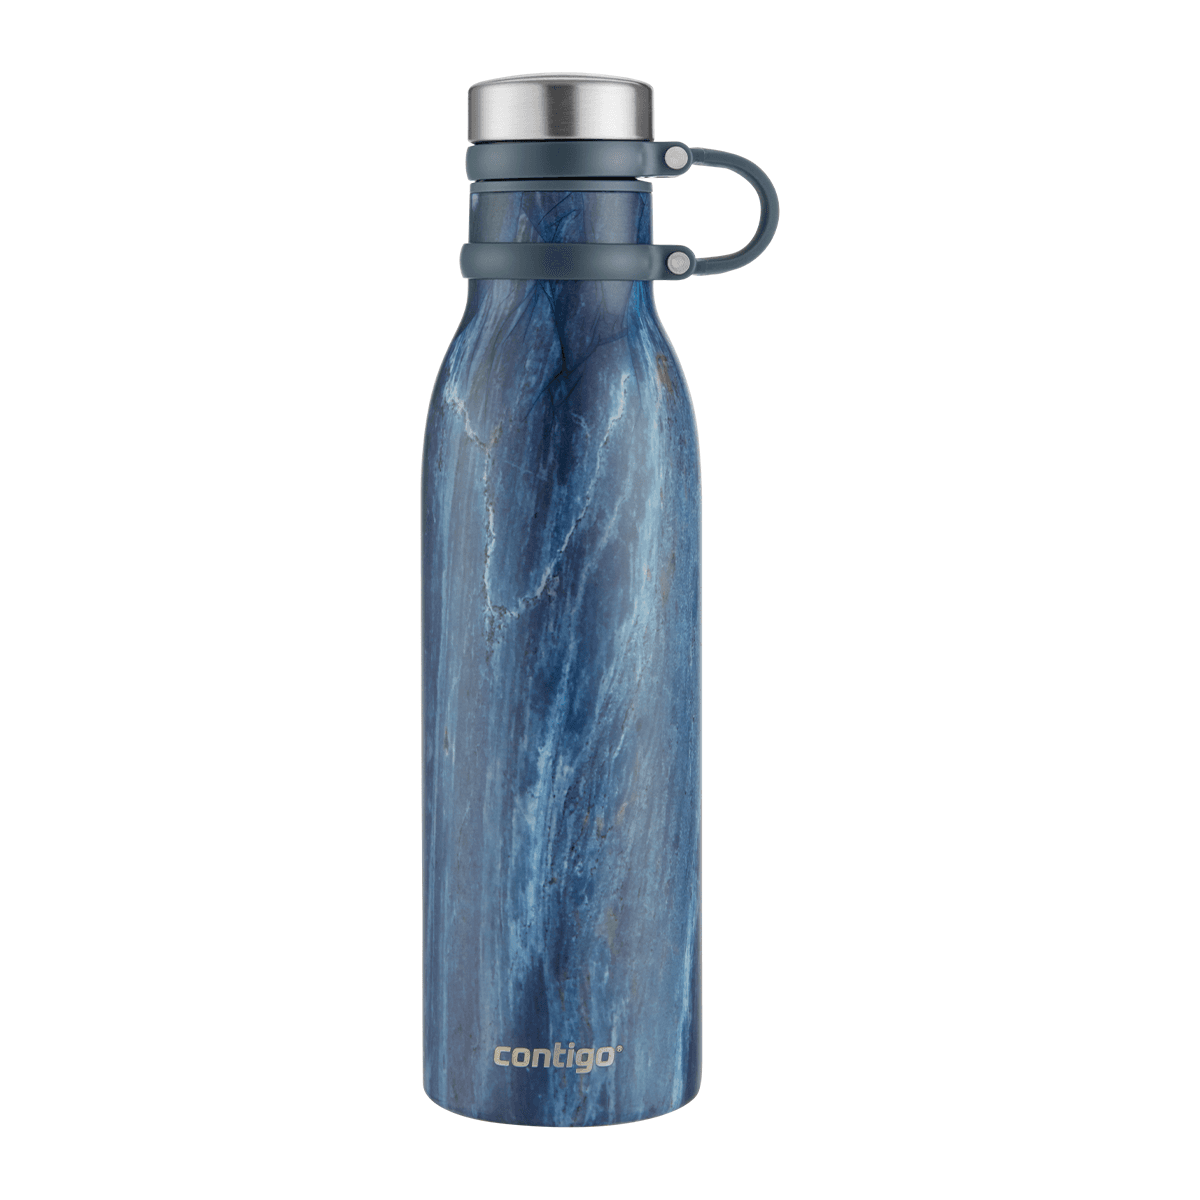 زجاجة ماء حافظة للحرارة 590 مل ستانلس ستيل أزرق مموج كونتيجو Contigo Blue Slate Matterhorn Couture Vacuum Insulated Bottle